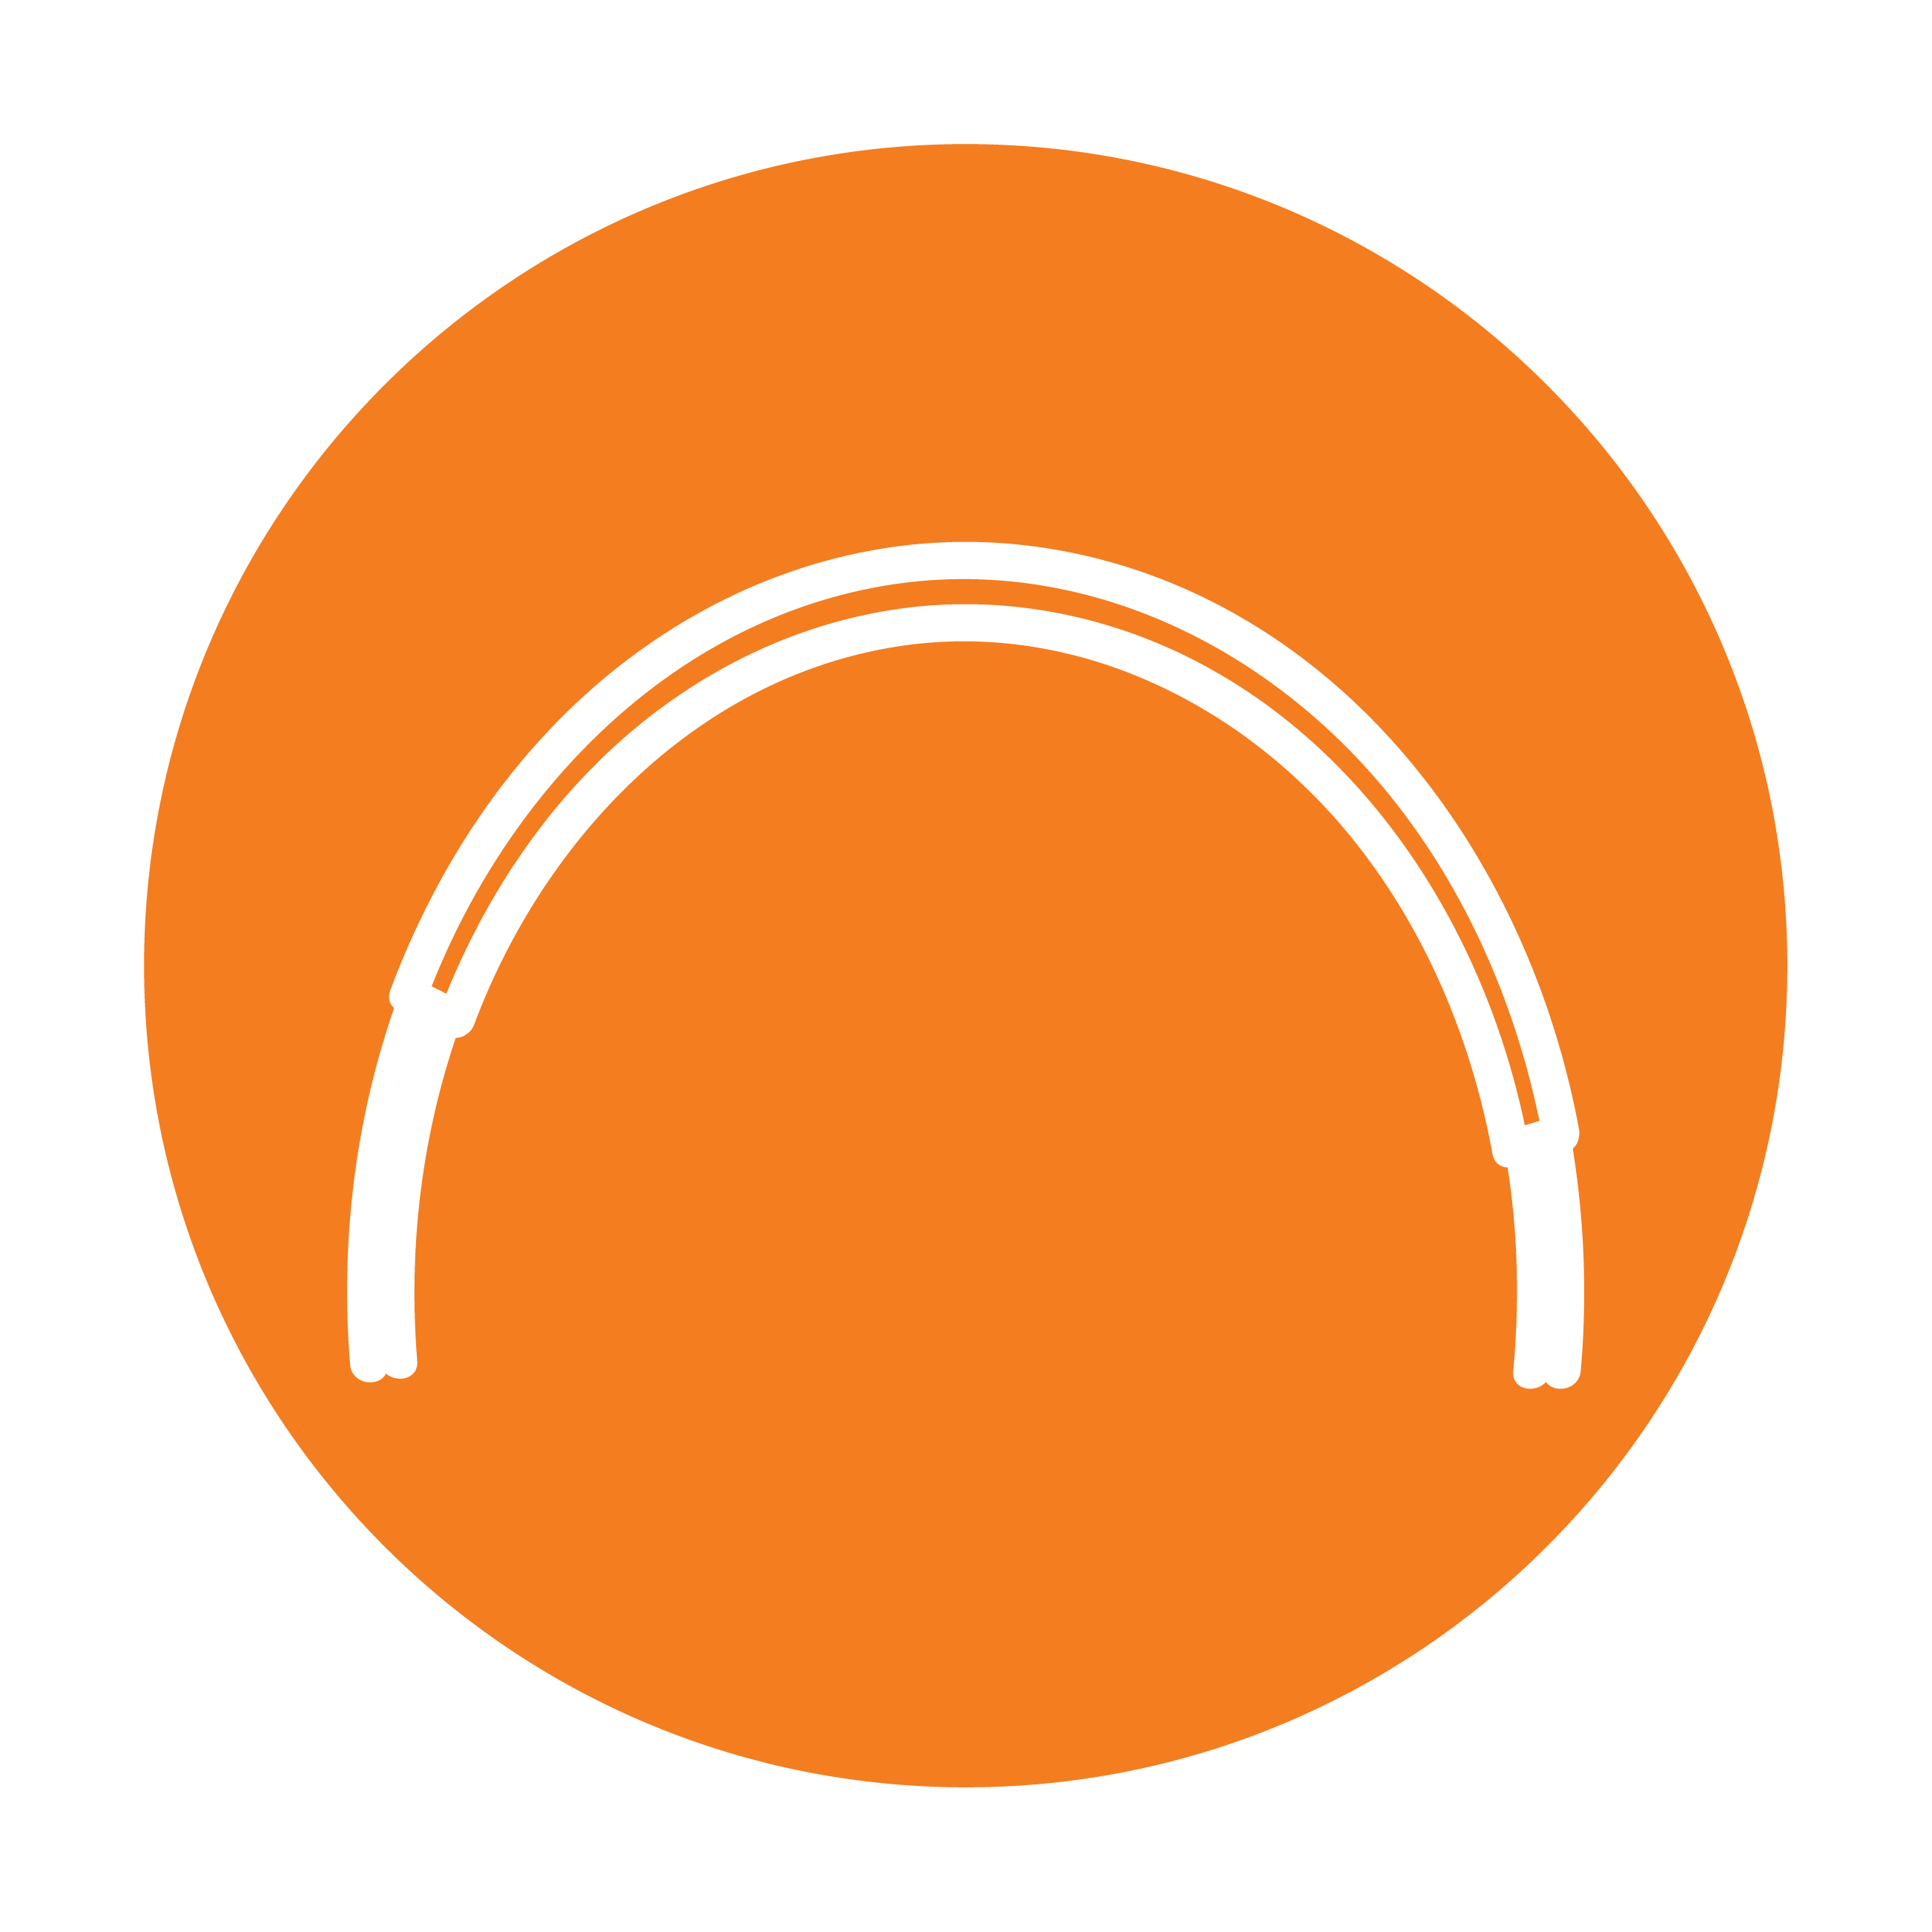 Esbit Icon in Orange zeigt den Klappgriff vom Wasserkessel aus hartanodisiertem Aluminium als Piktogramm.